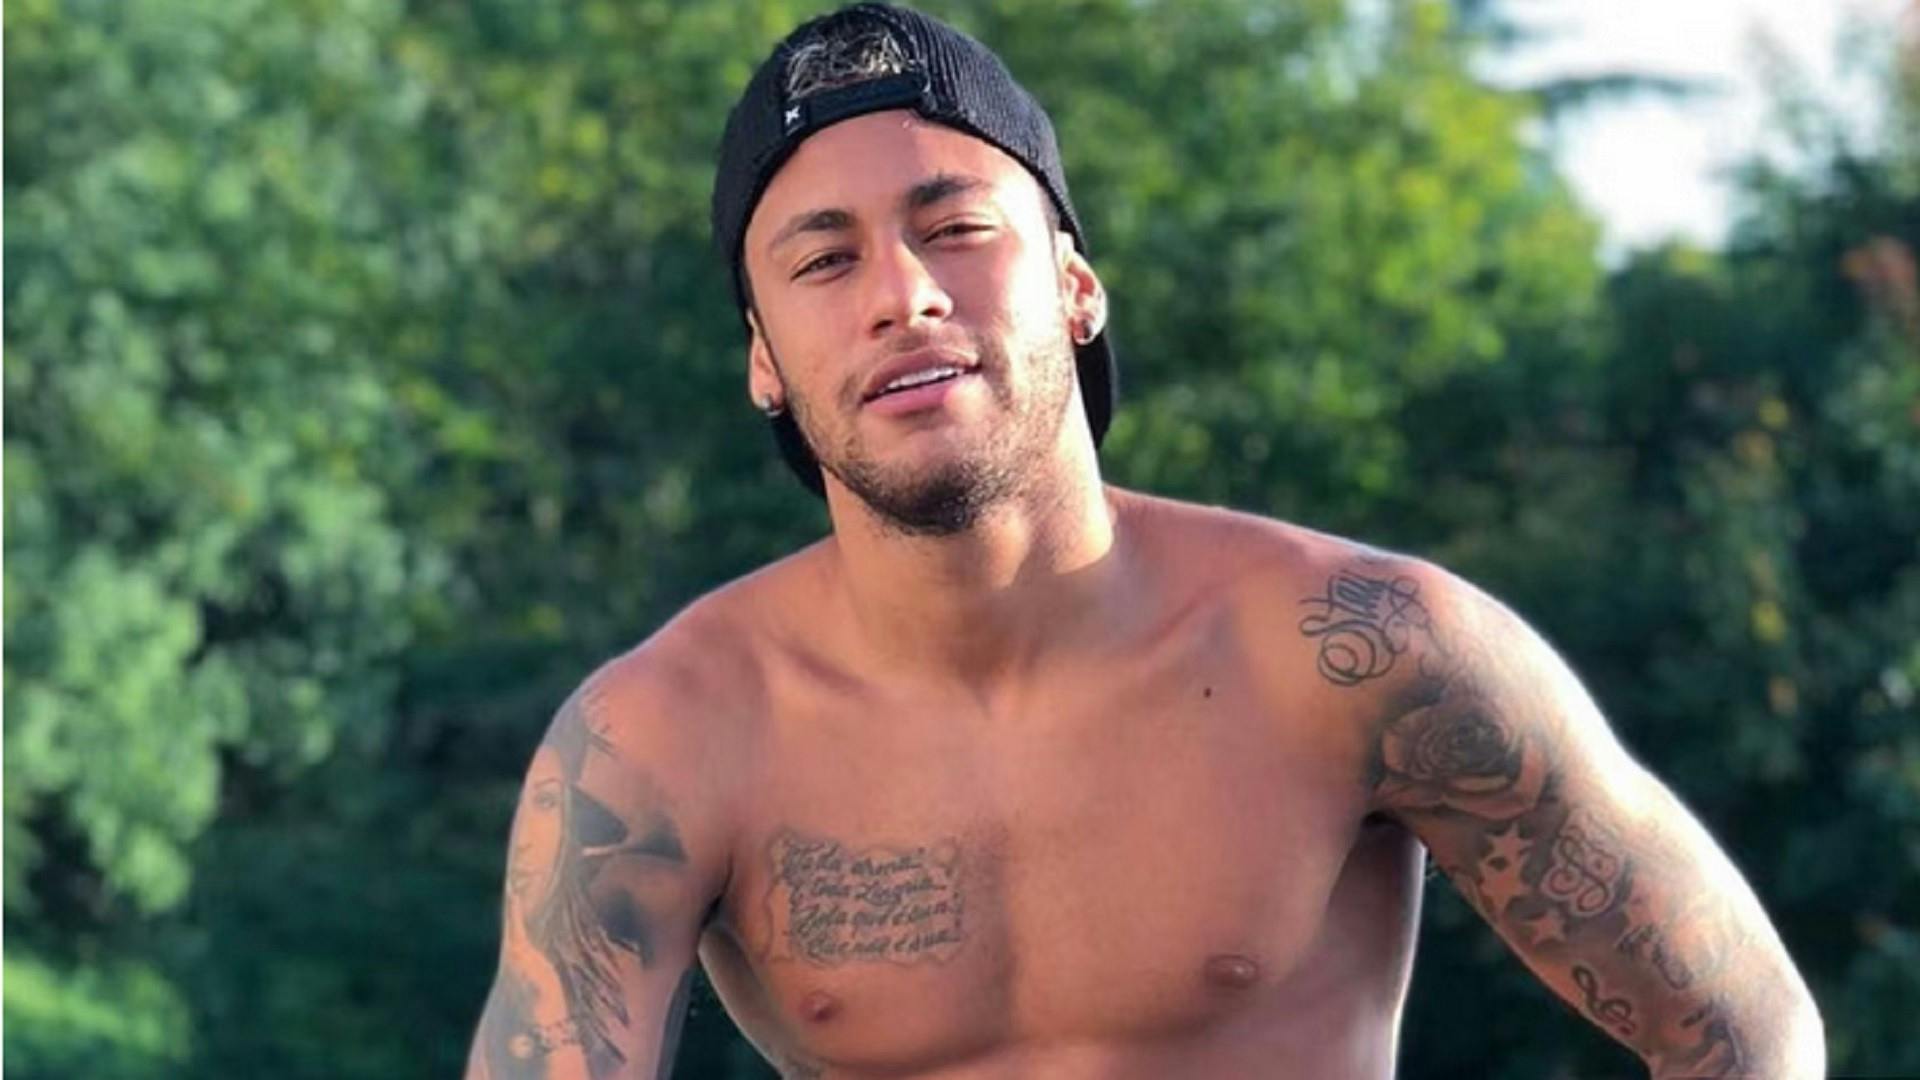 Sesso senza limiti anche con un uomo. Clamorose voci su Neymar (FOTO)